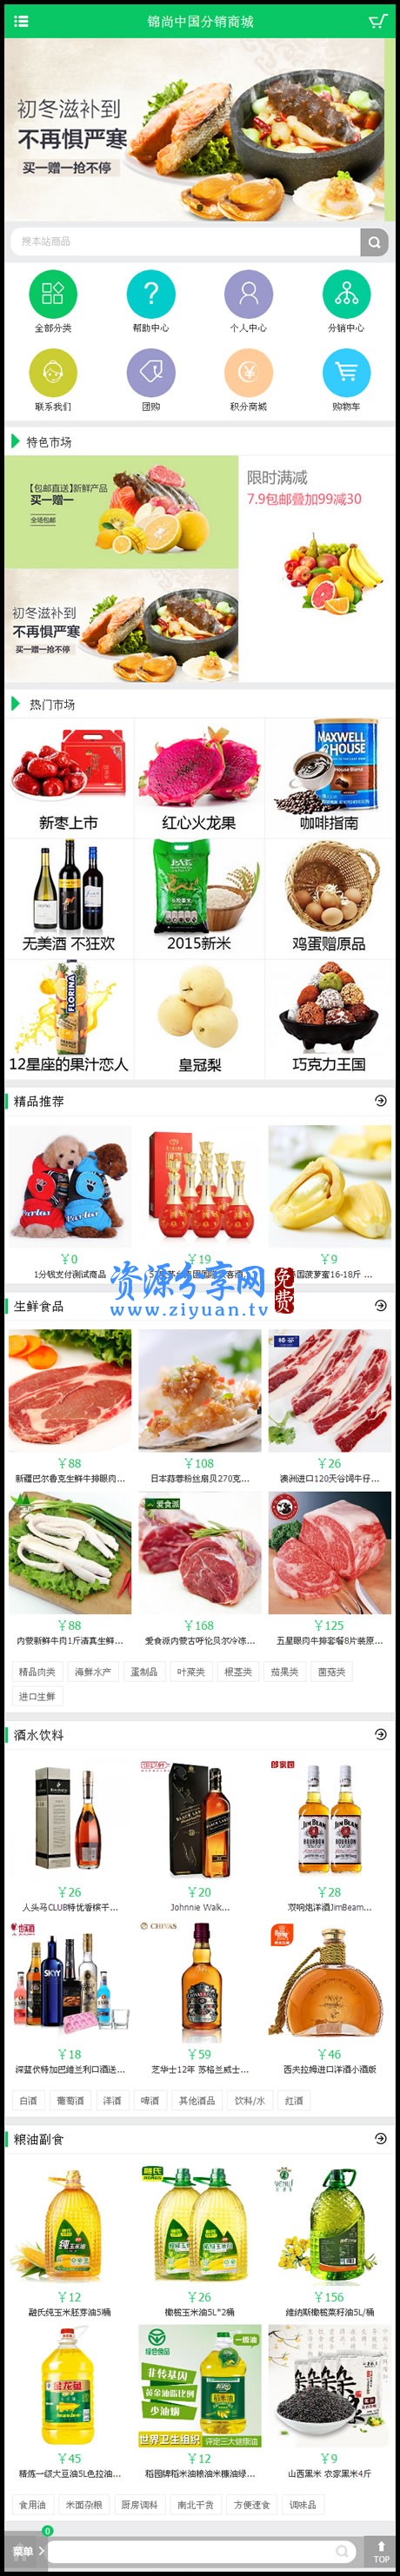 Ecshop 生鲜超市农产品网站 PC+WAP+微信分销+微信支付商城整站源码